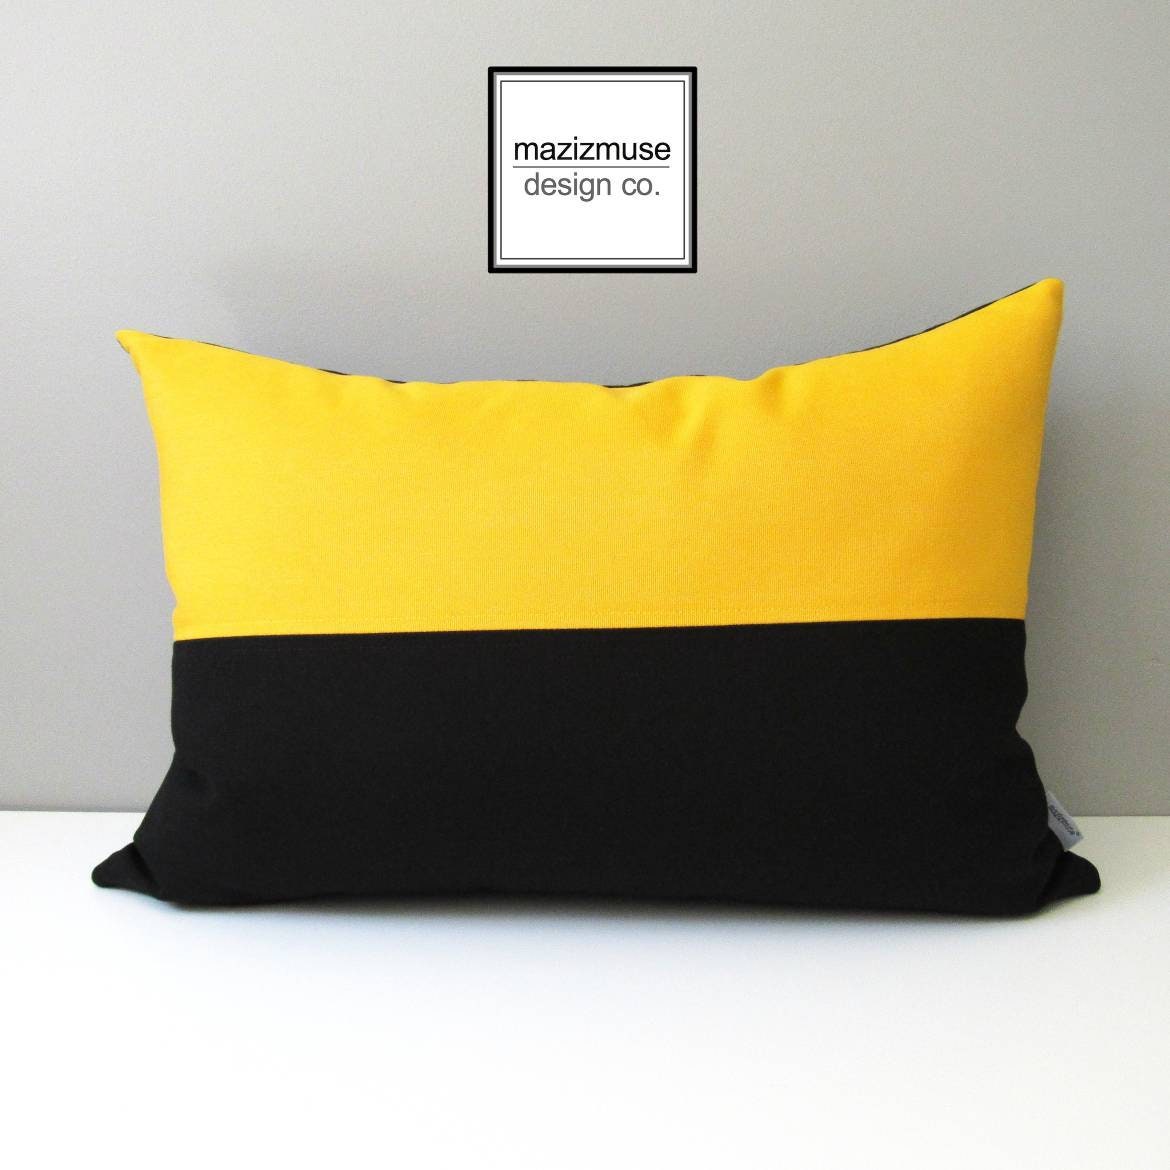 Black & White Sunbrella Outdoor Pillow Cover, Decorative Cushion Cover